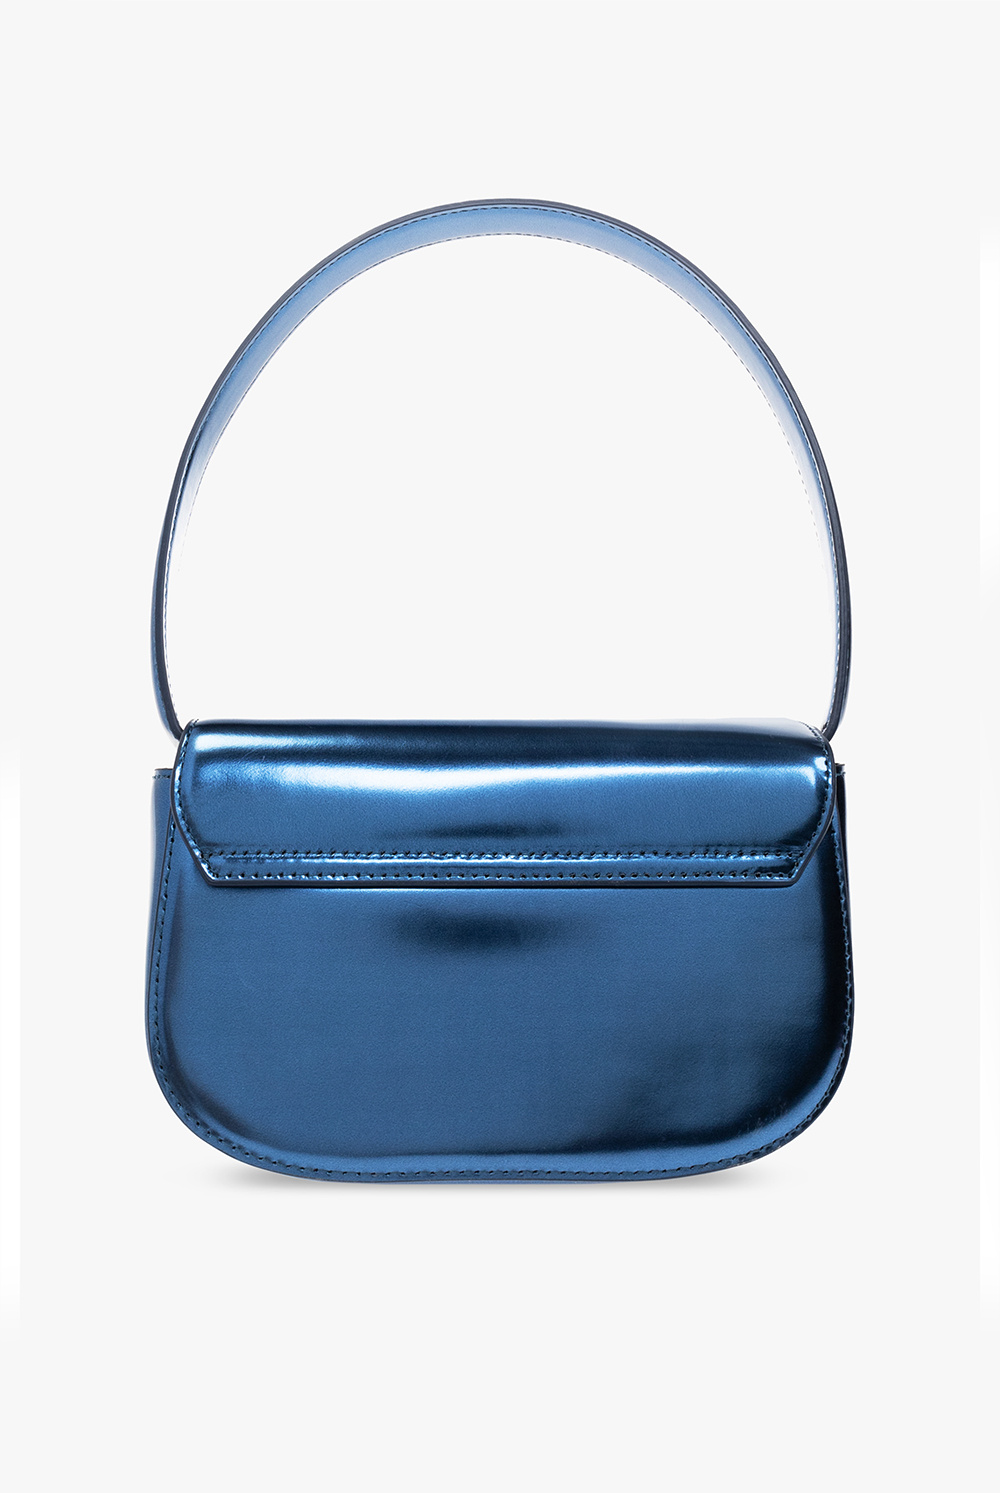 Jacquemus 'Le Porte Atla' wallet, Men's Bags